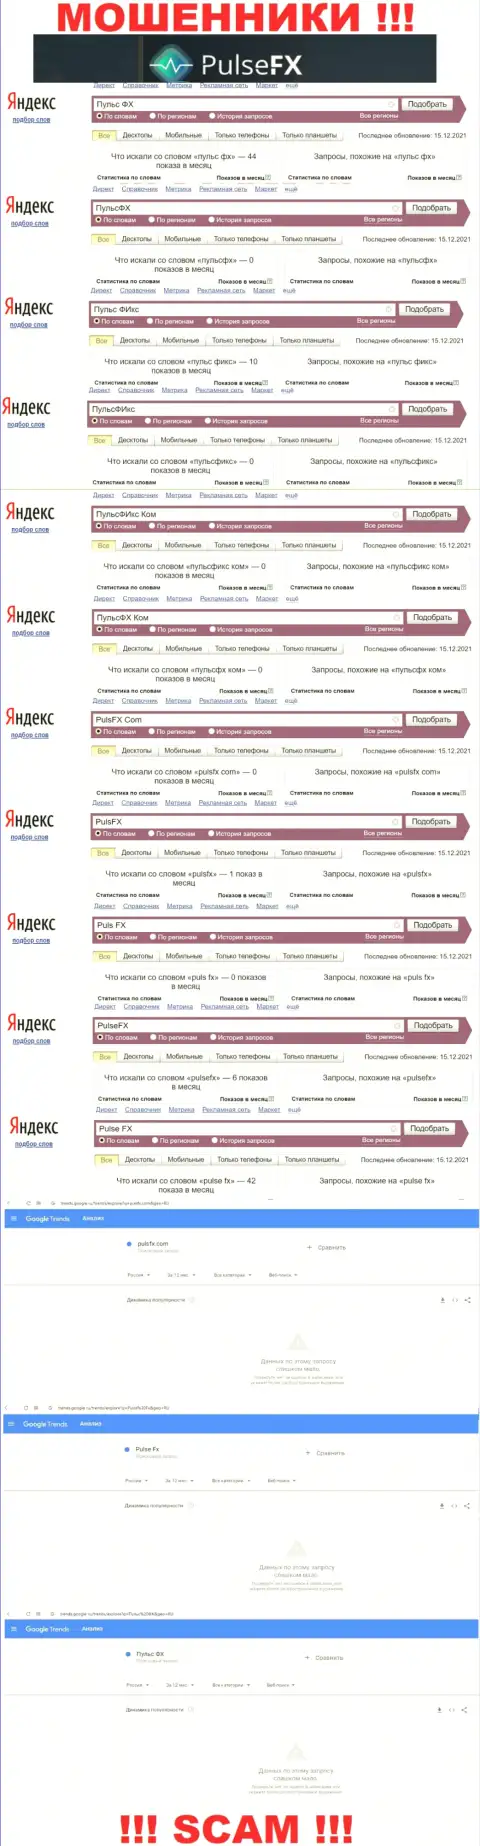 Количество online-запросов в сети интернет по бренду махинаторов PulseFX